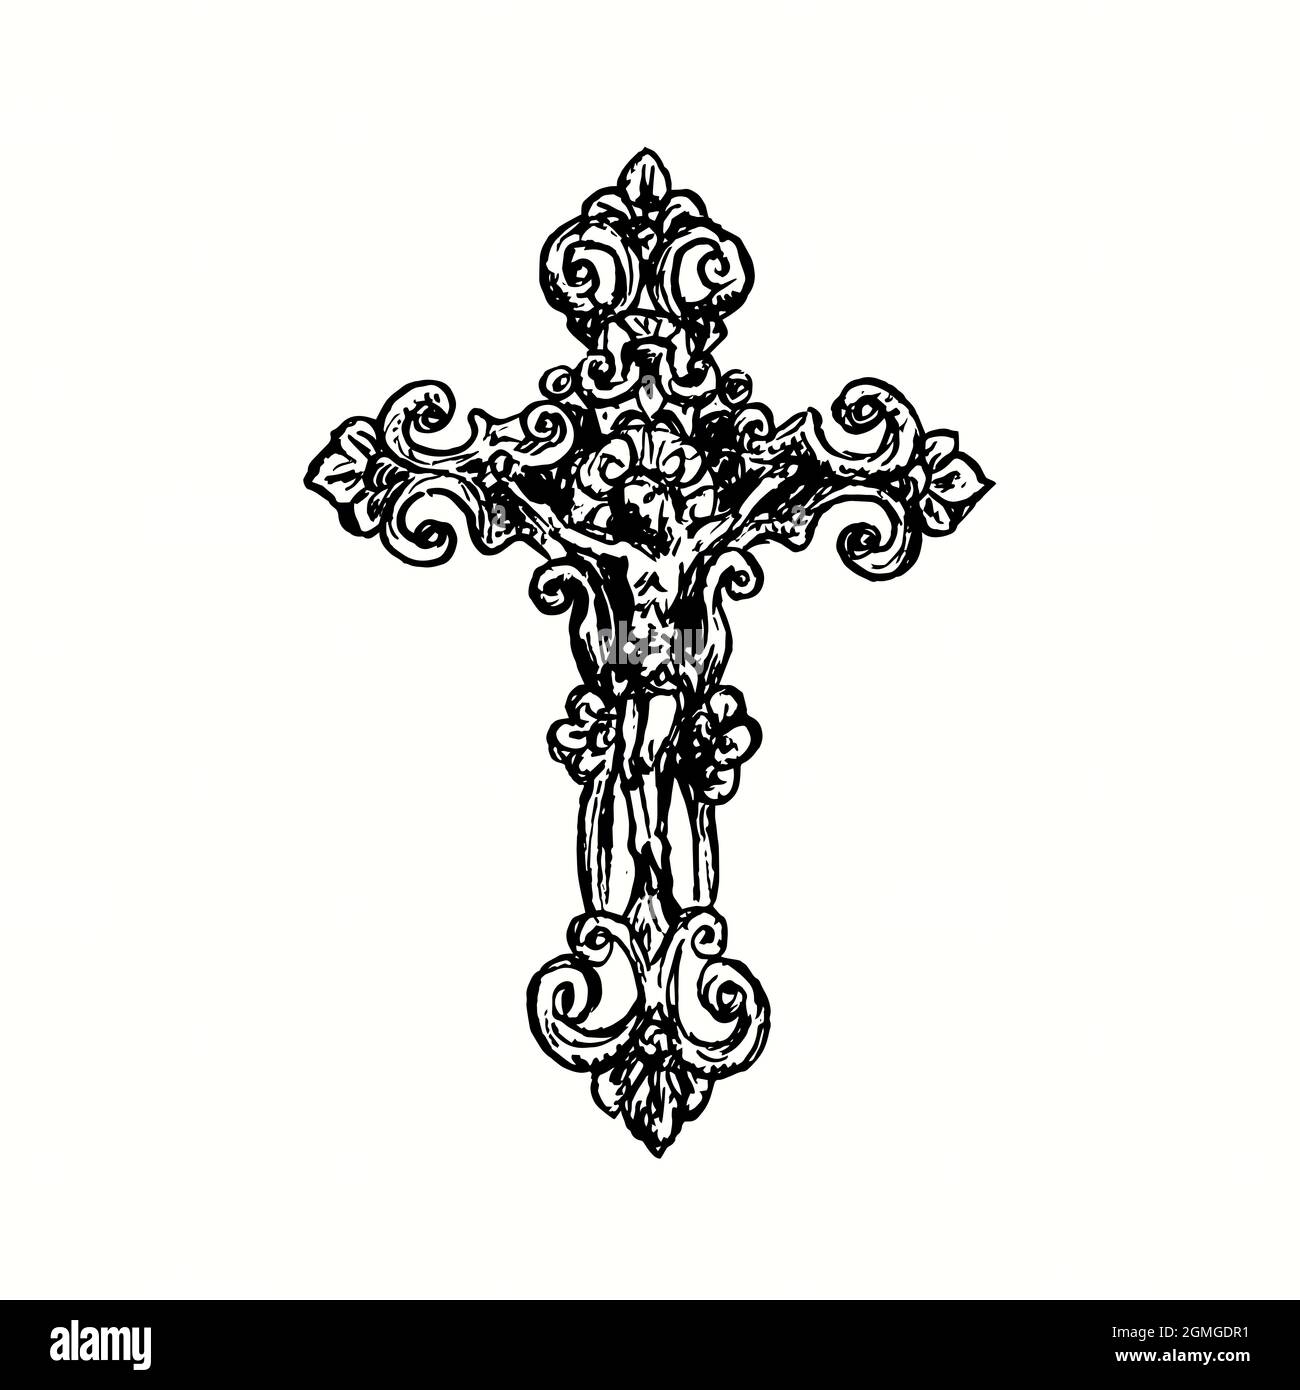 Croce decorativa in stile vintage con Crocifissione. Immagine del disegno in bianco e nero con inchiostro Foto Stock